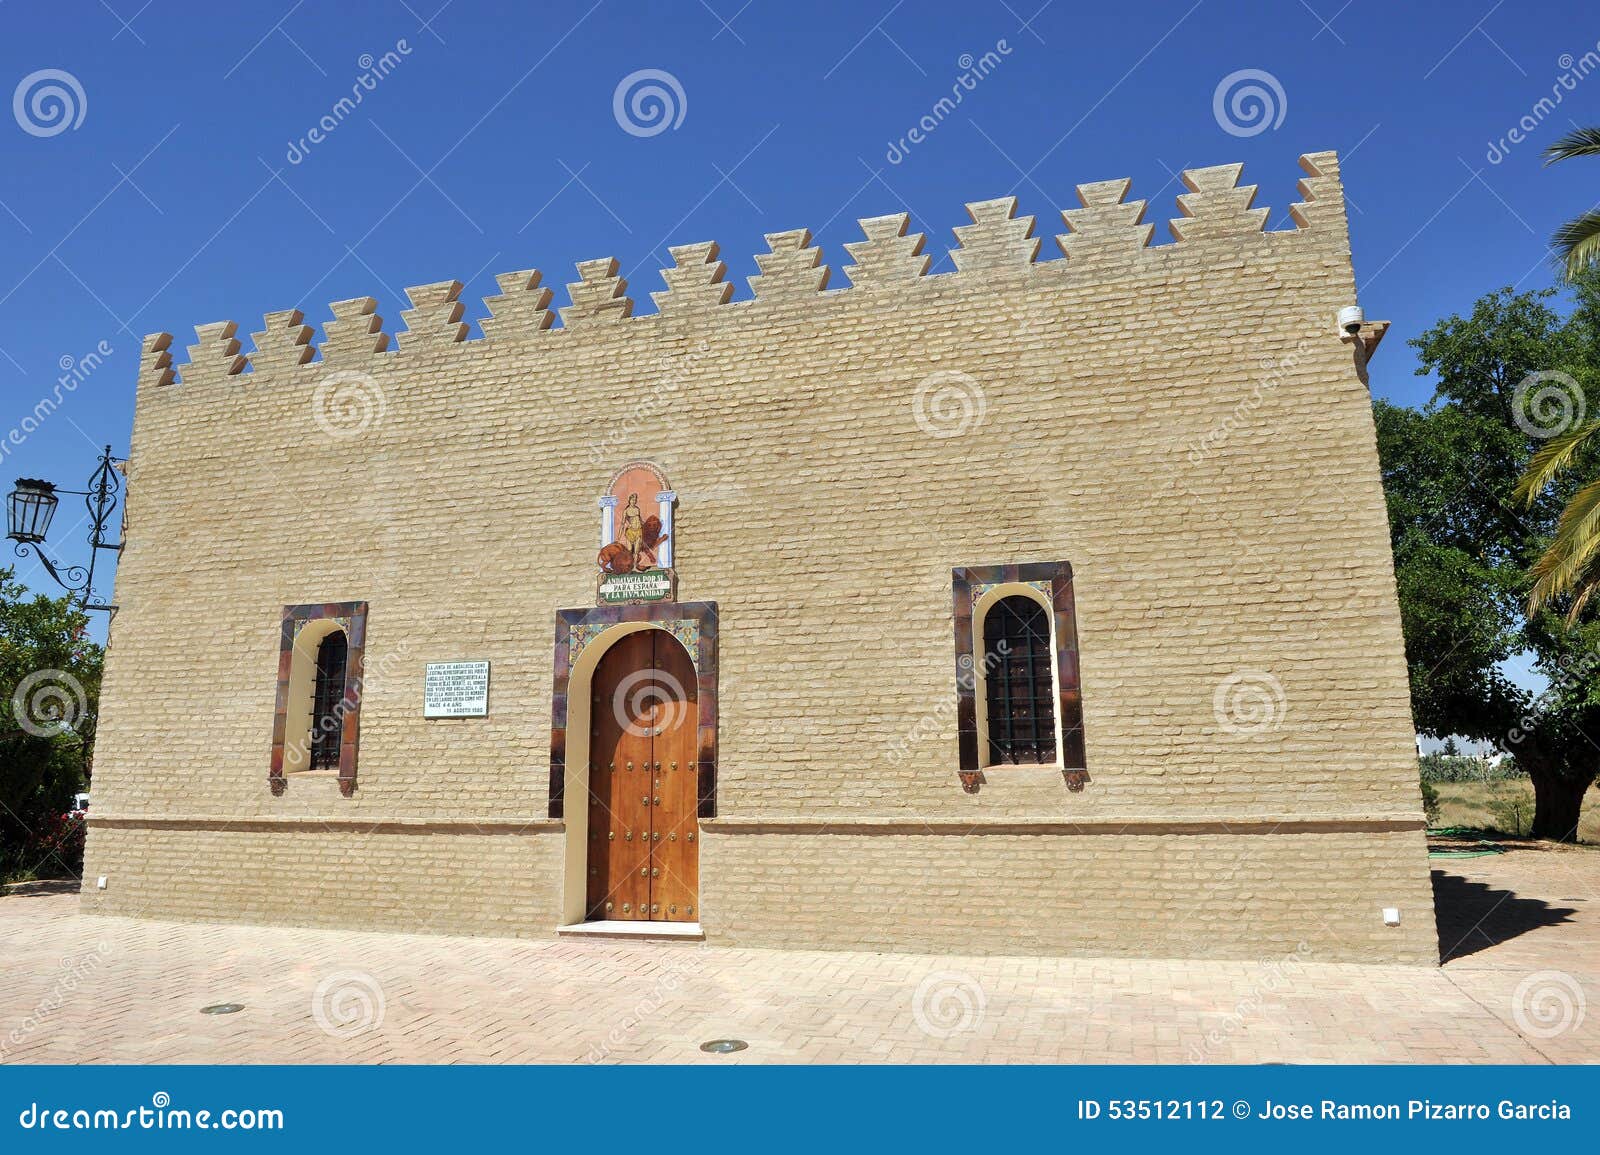 blas infante house, coria del rio, seville province, andalusia, spain